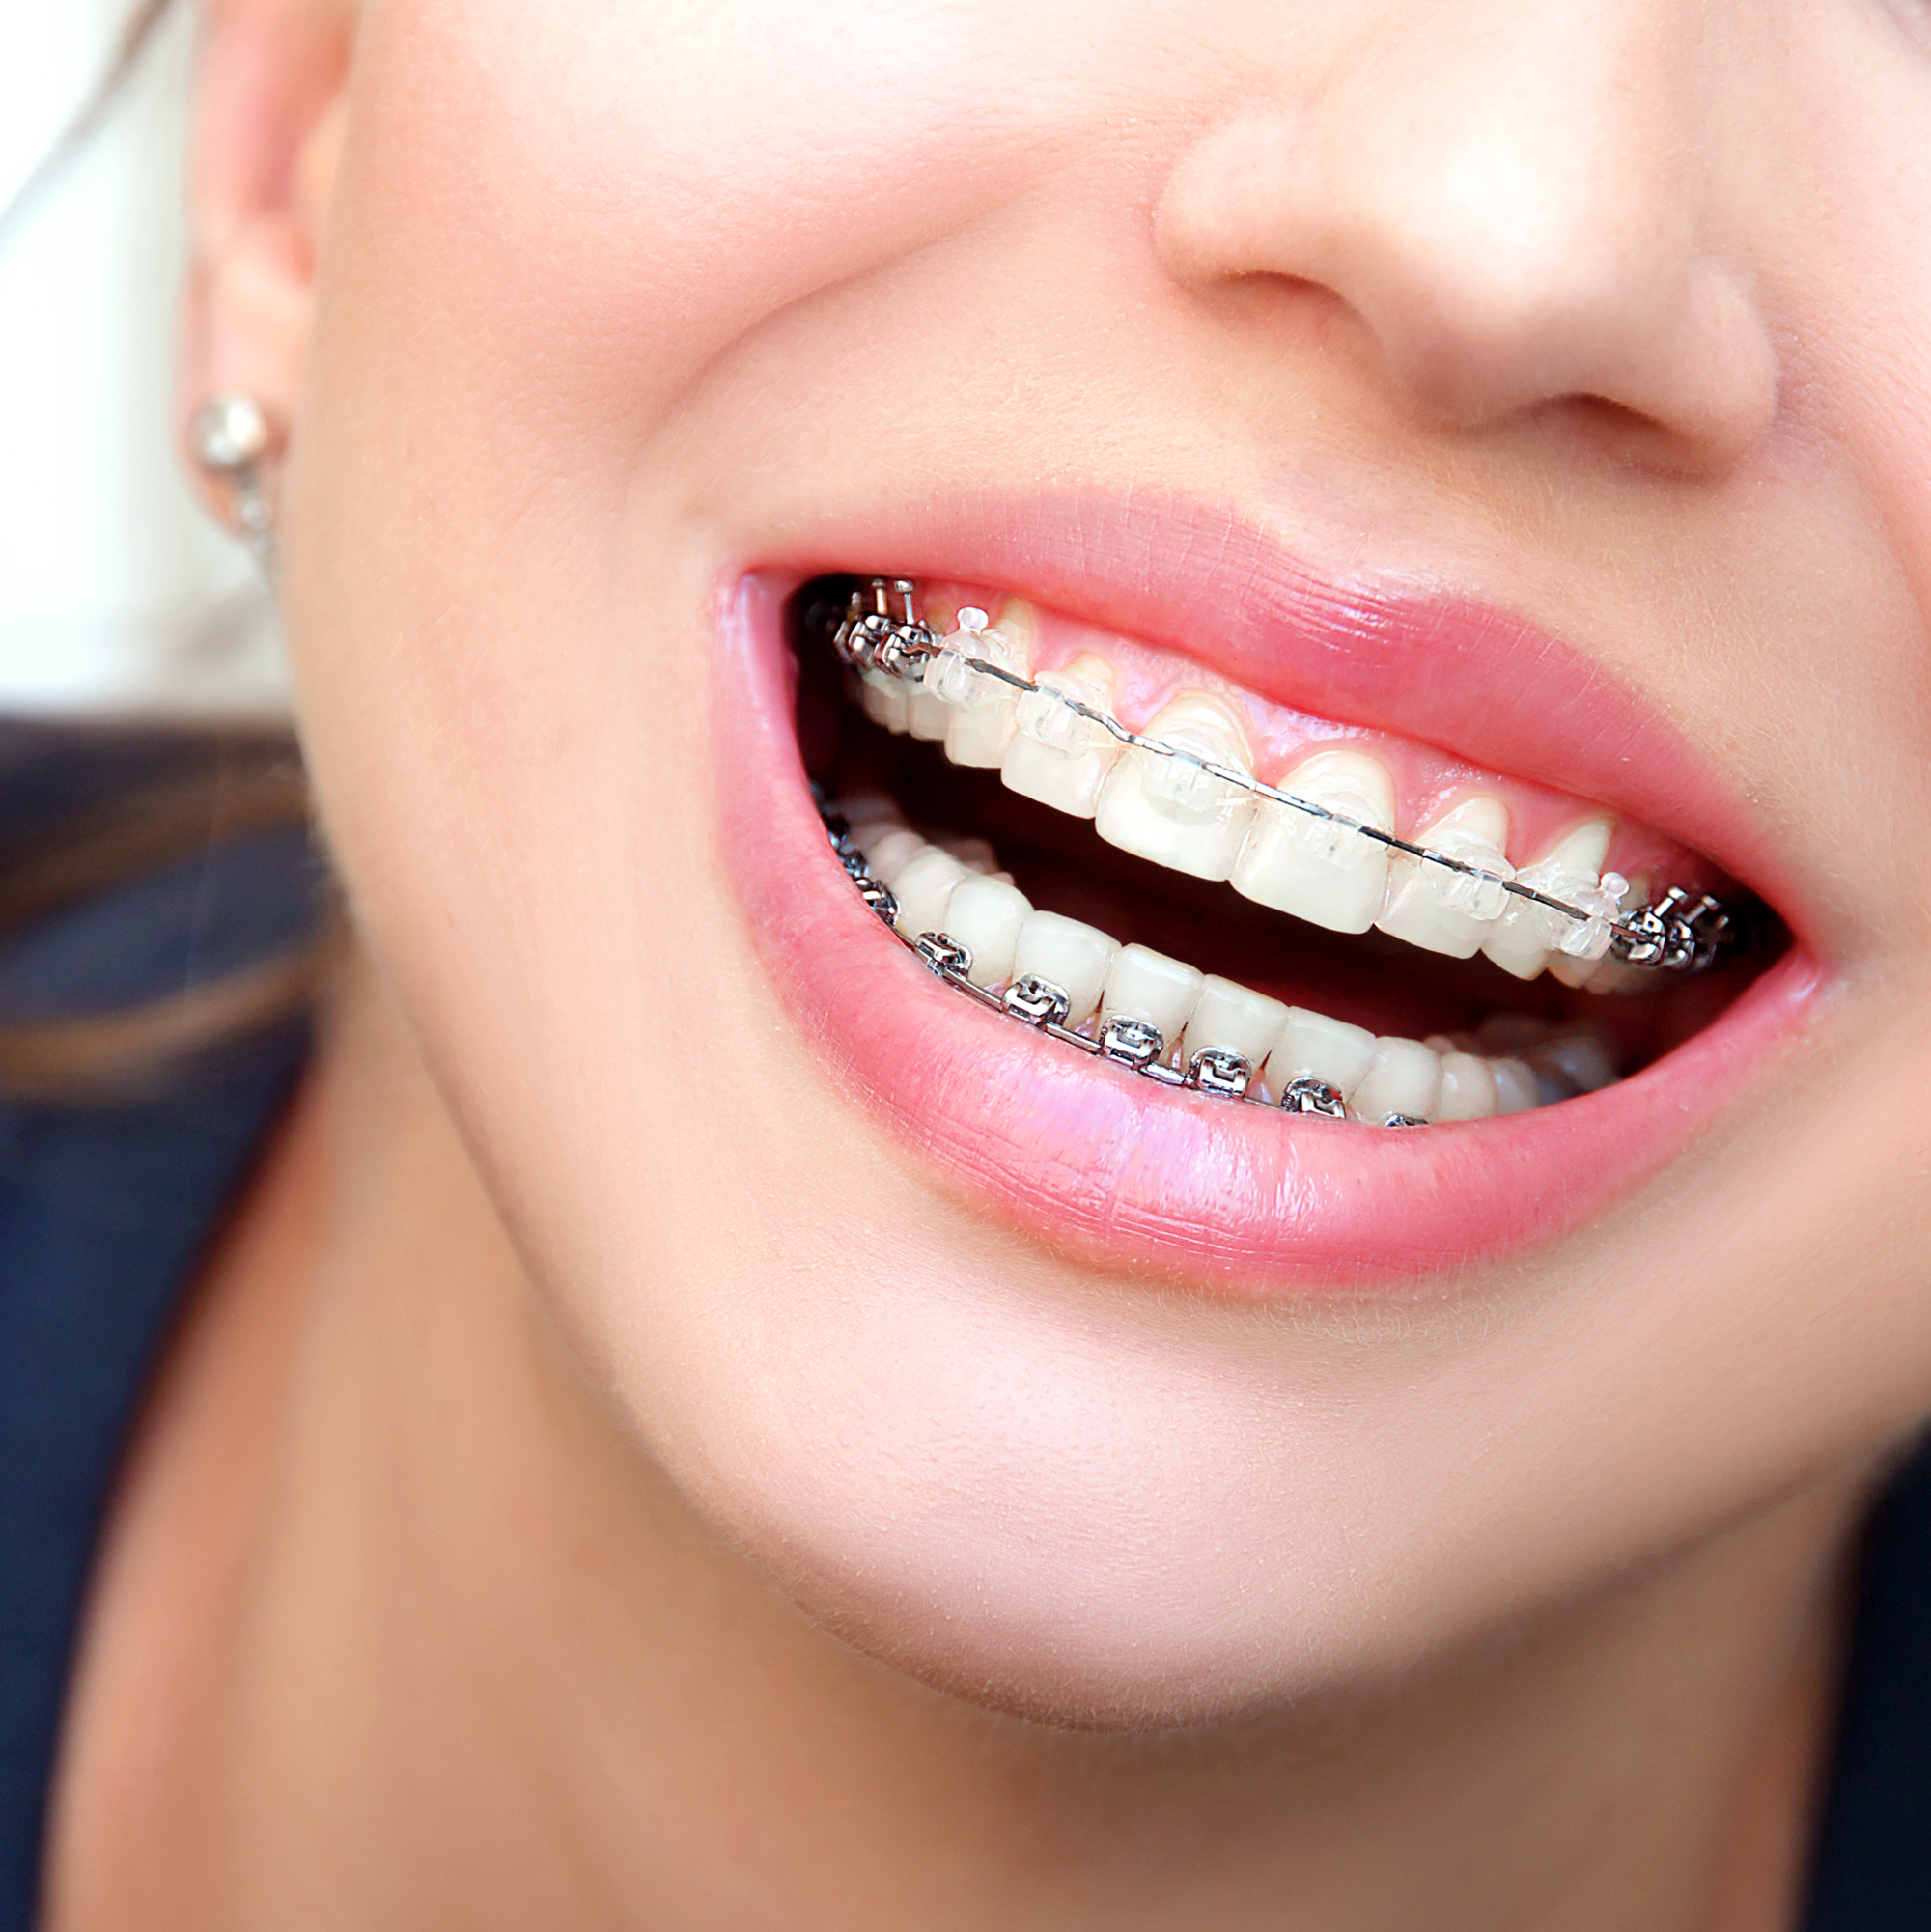 Ortodontik Tedavi Sürecimi Nasıl Kısaltırım?